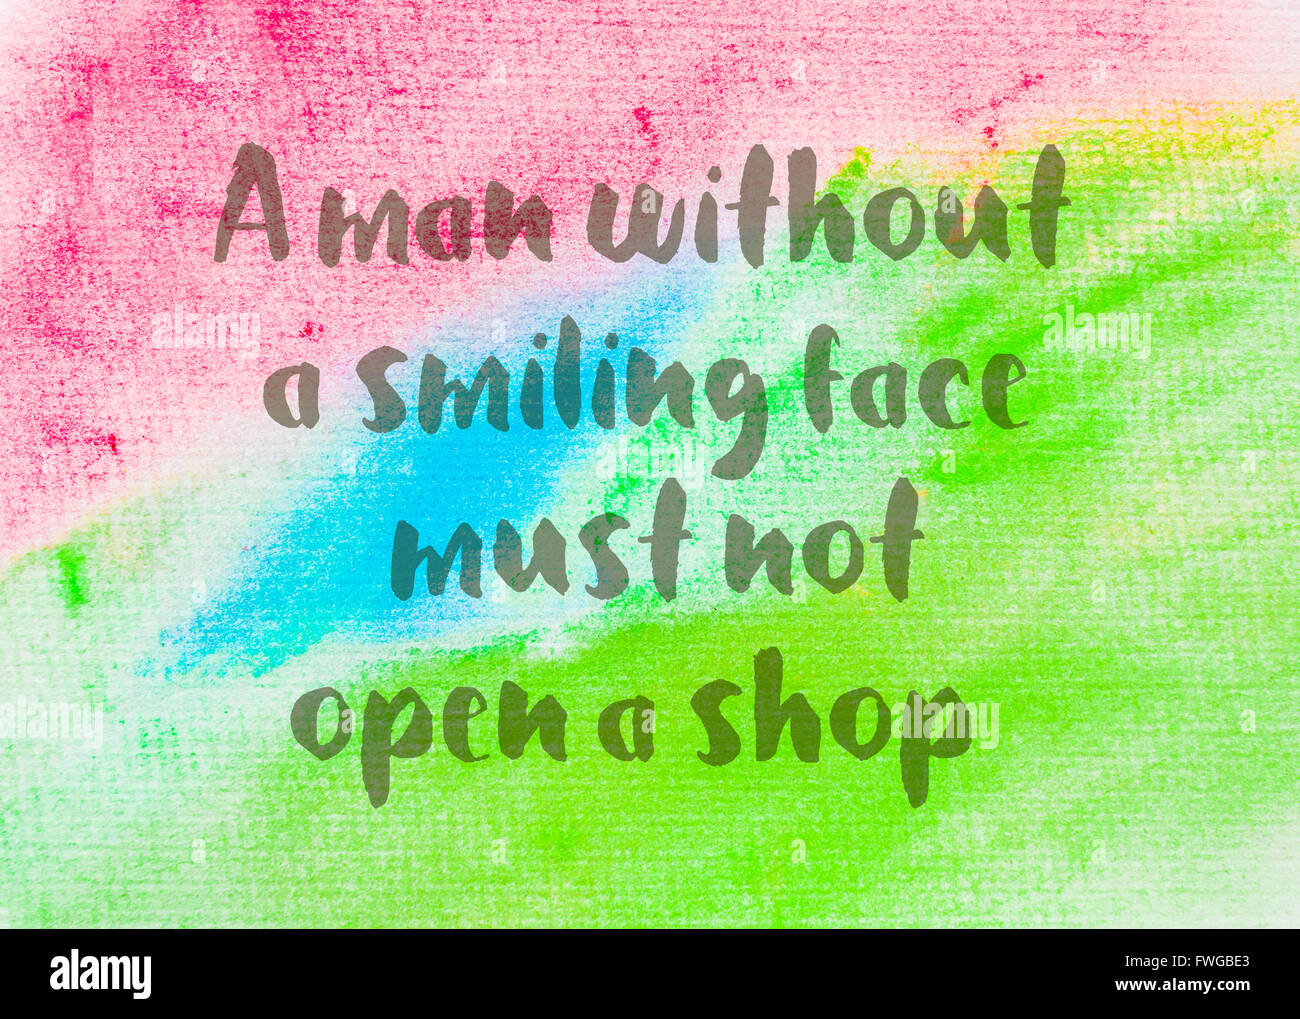 Ein Mann ohne ein lächelndes Gesicht muss keinen Shop eröffnen. Inspirierend Zitat über abstrakte Wasser Farbe strukturierten Hintergrund Stockfoto